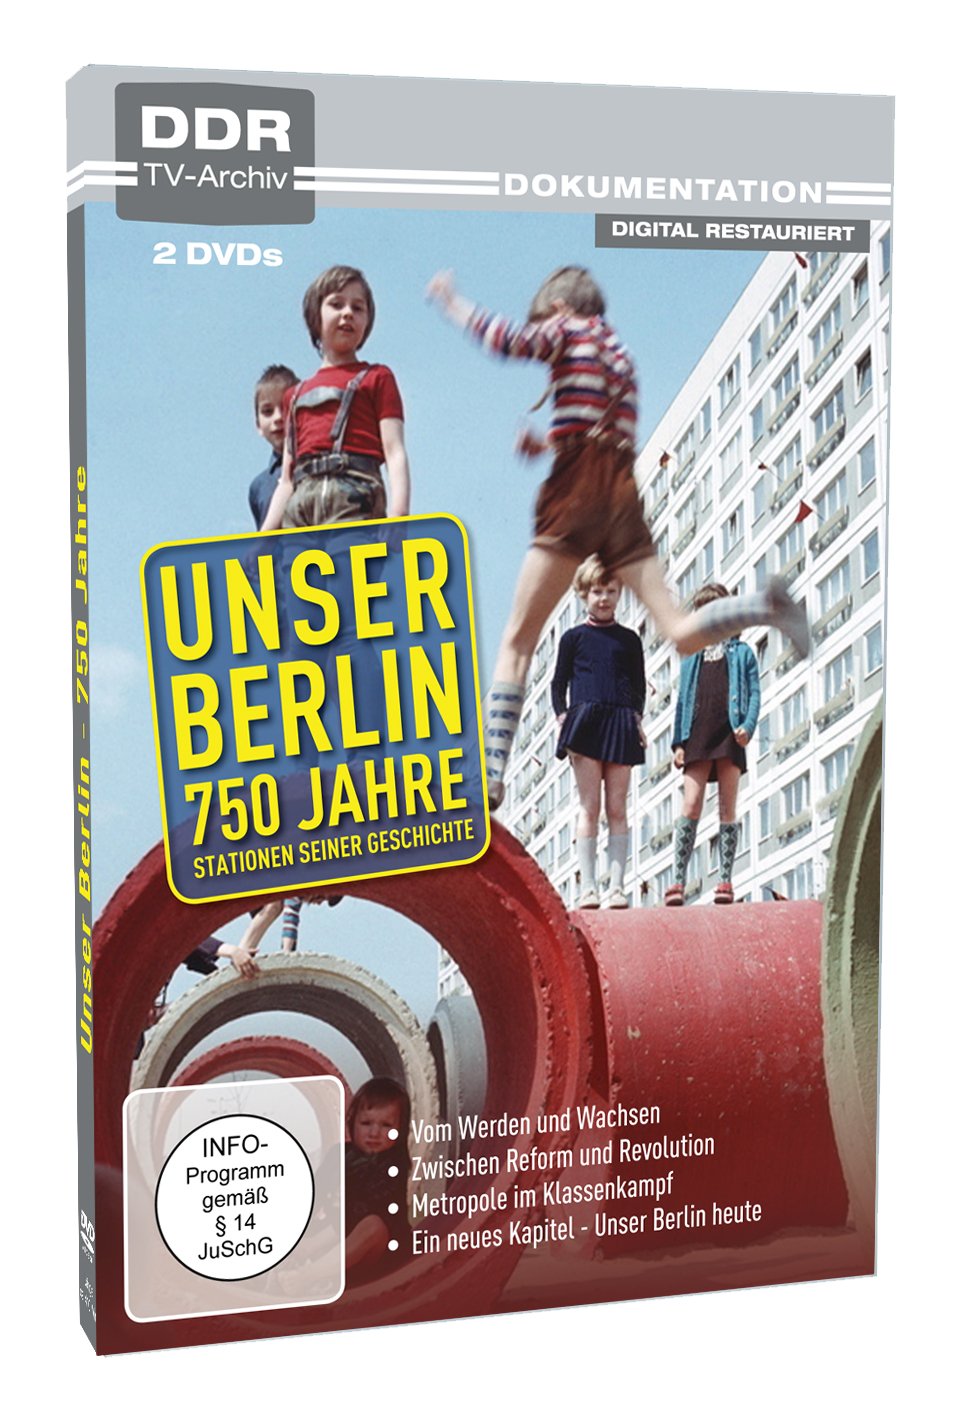 Unser Berlin - 750 Jahre (DDR TV-Archiv)